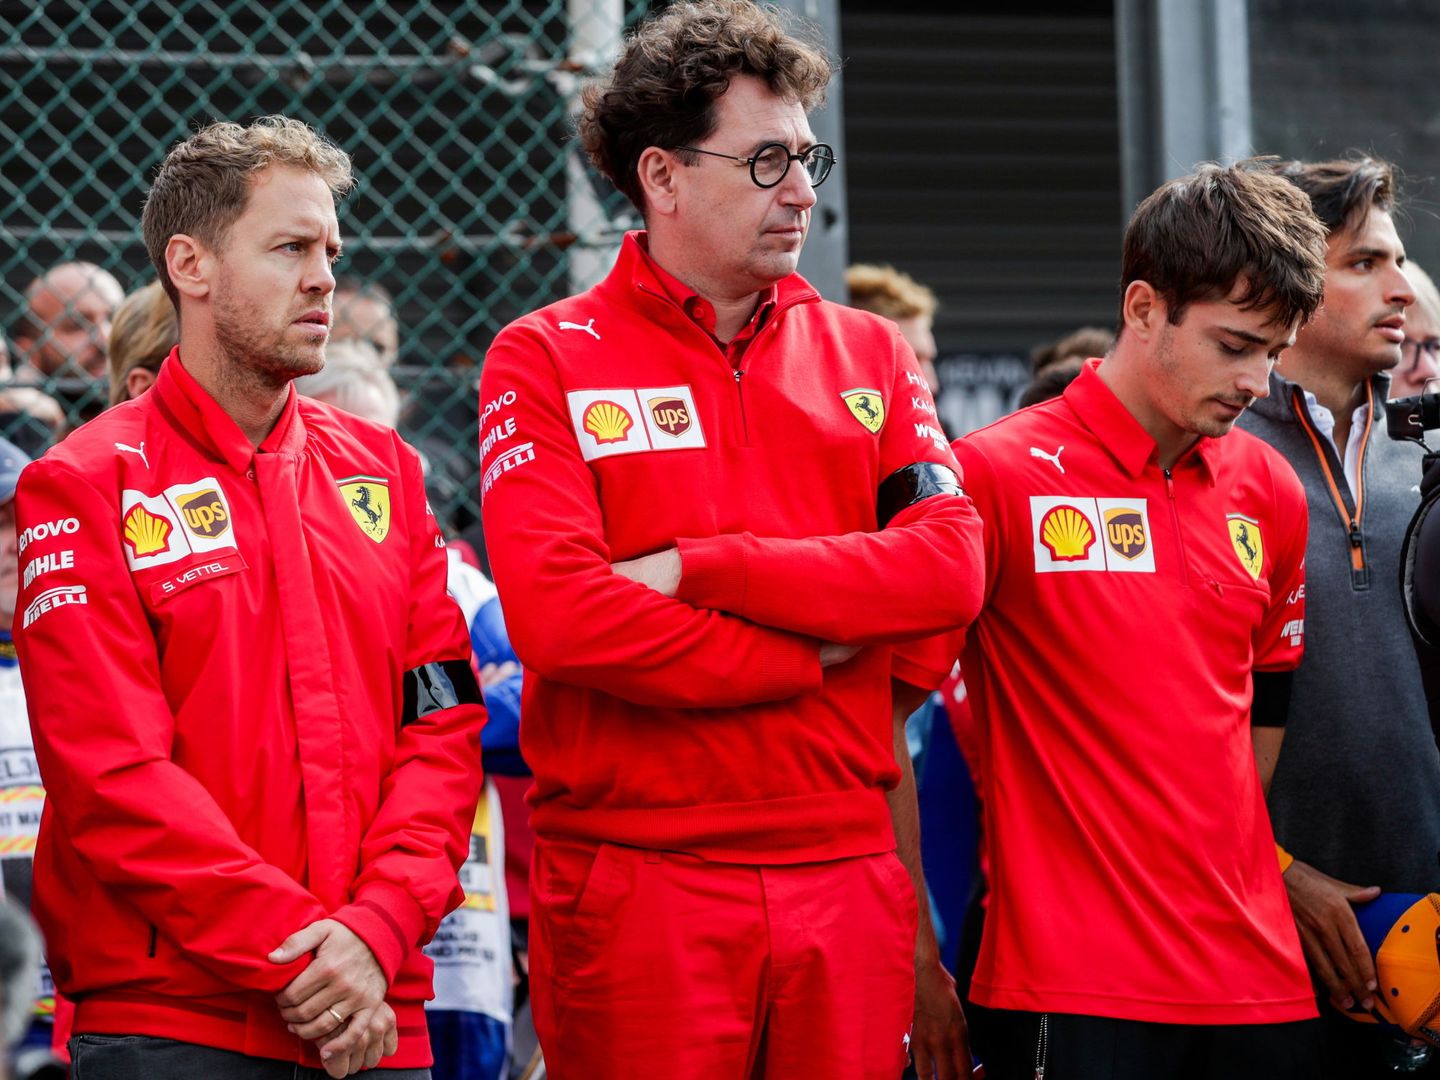 La relación de Vettel con la cúpula de Ferrari pudo deteriorarse definitivamente con la polémica salida del equipo 